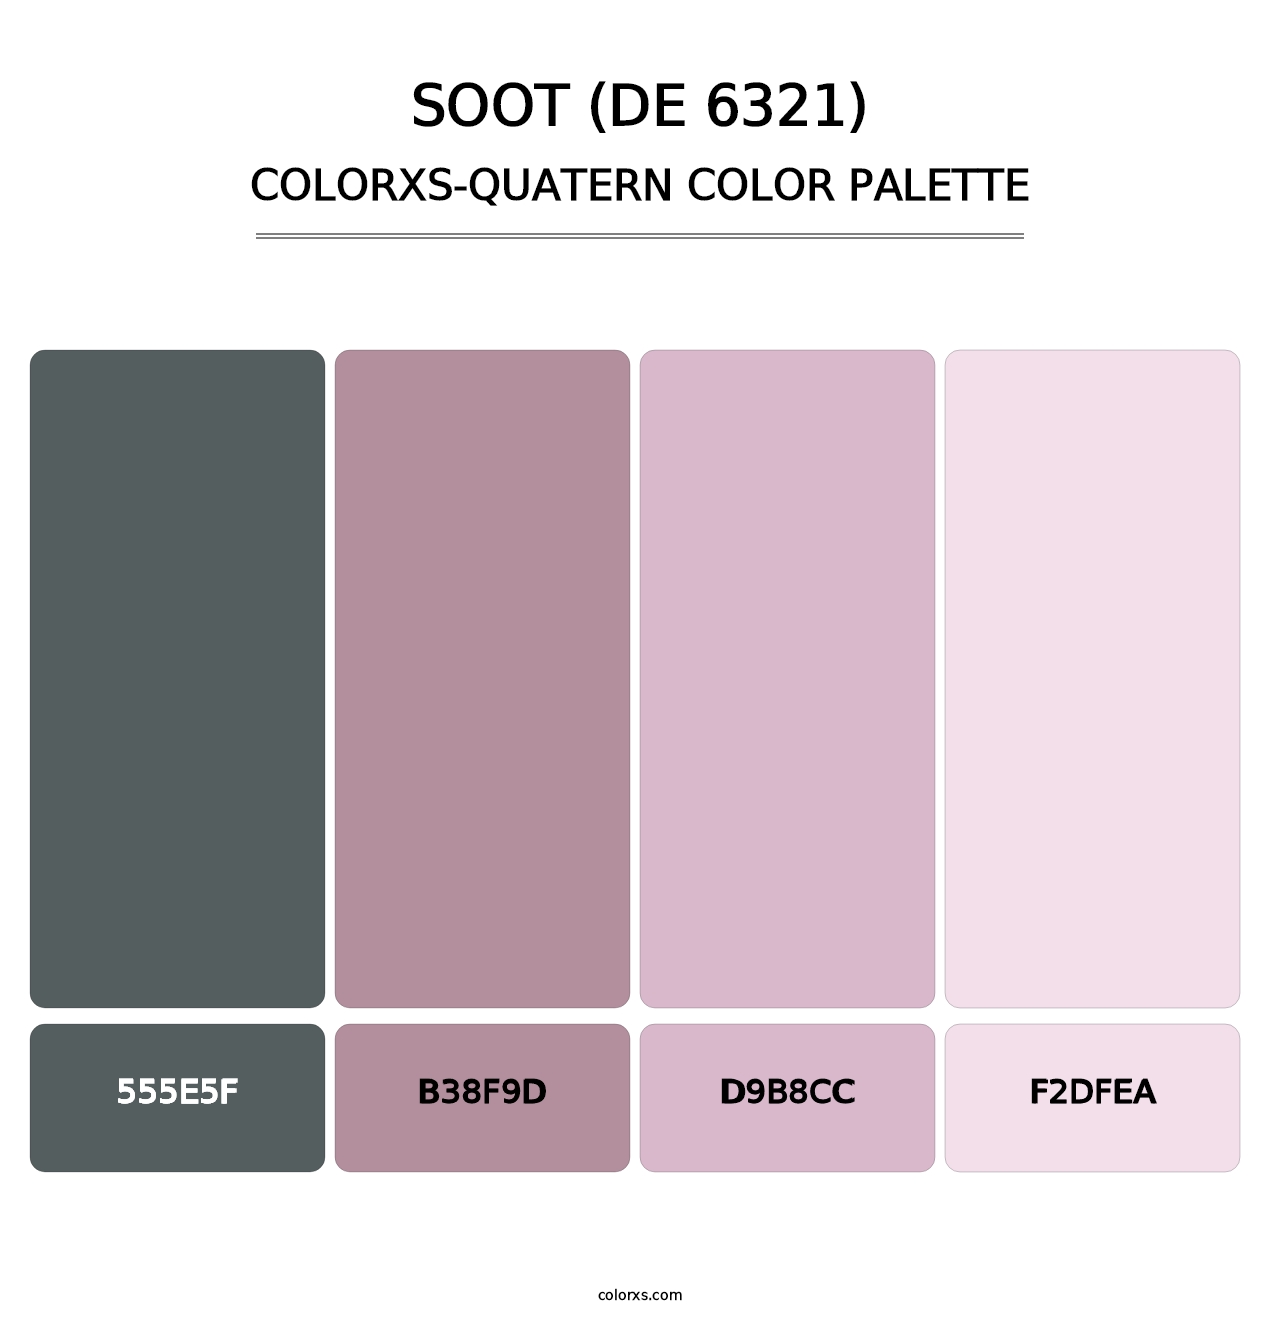 Soot (DE 6321) - Colorxs Quatern Palette